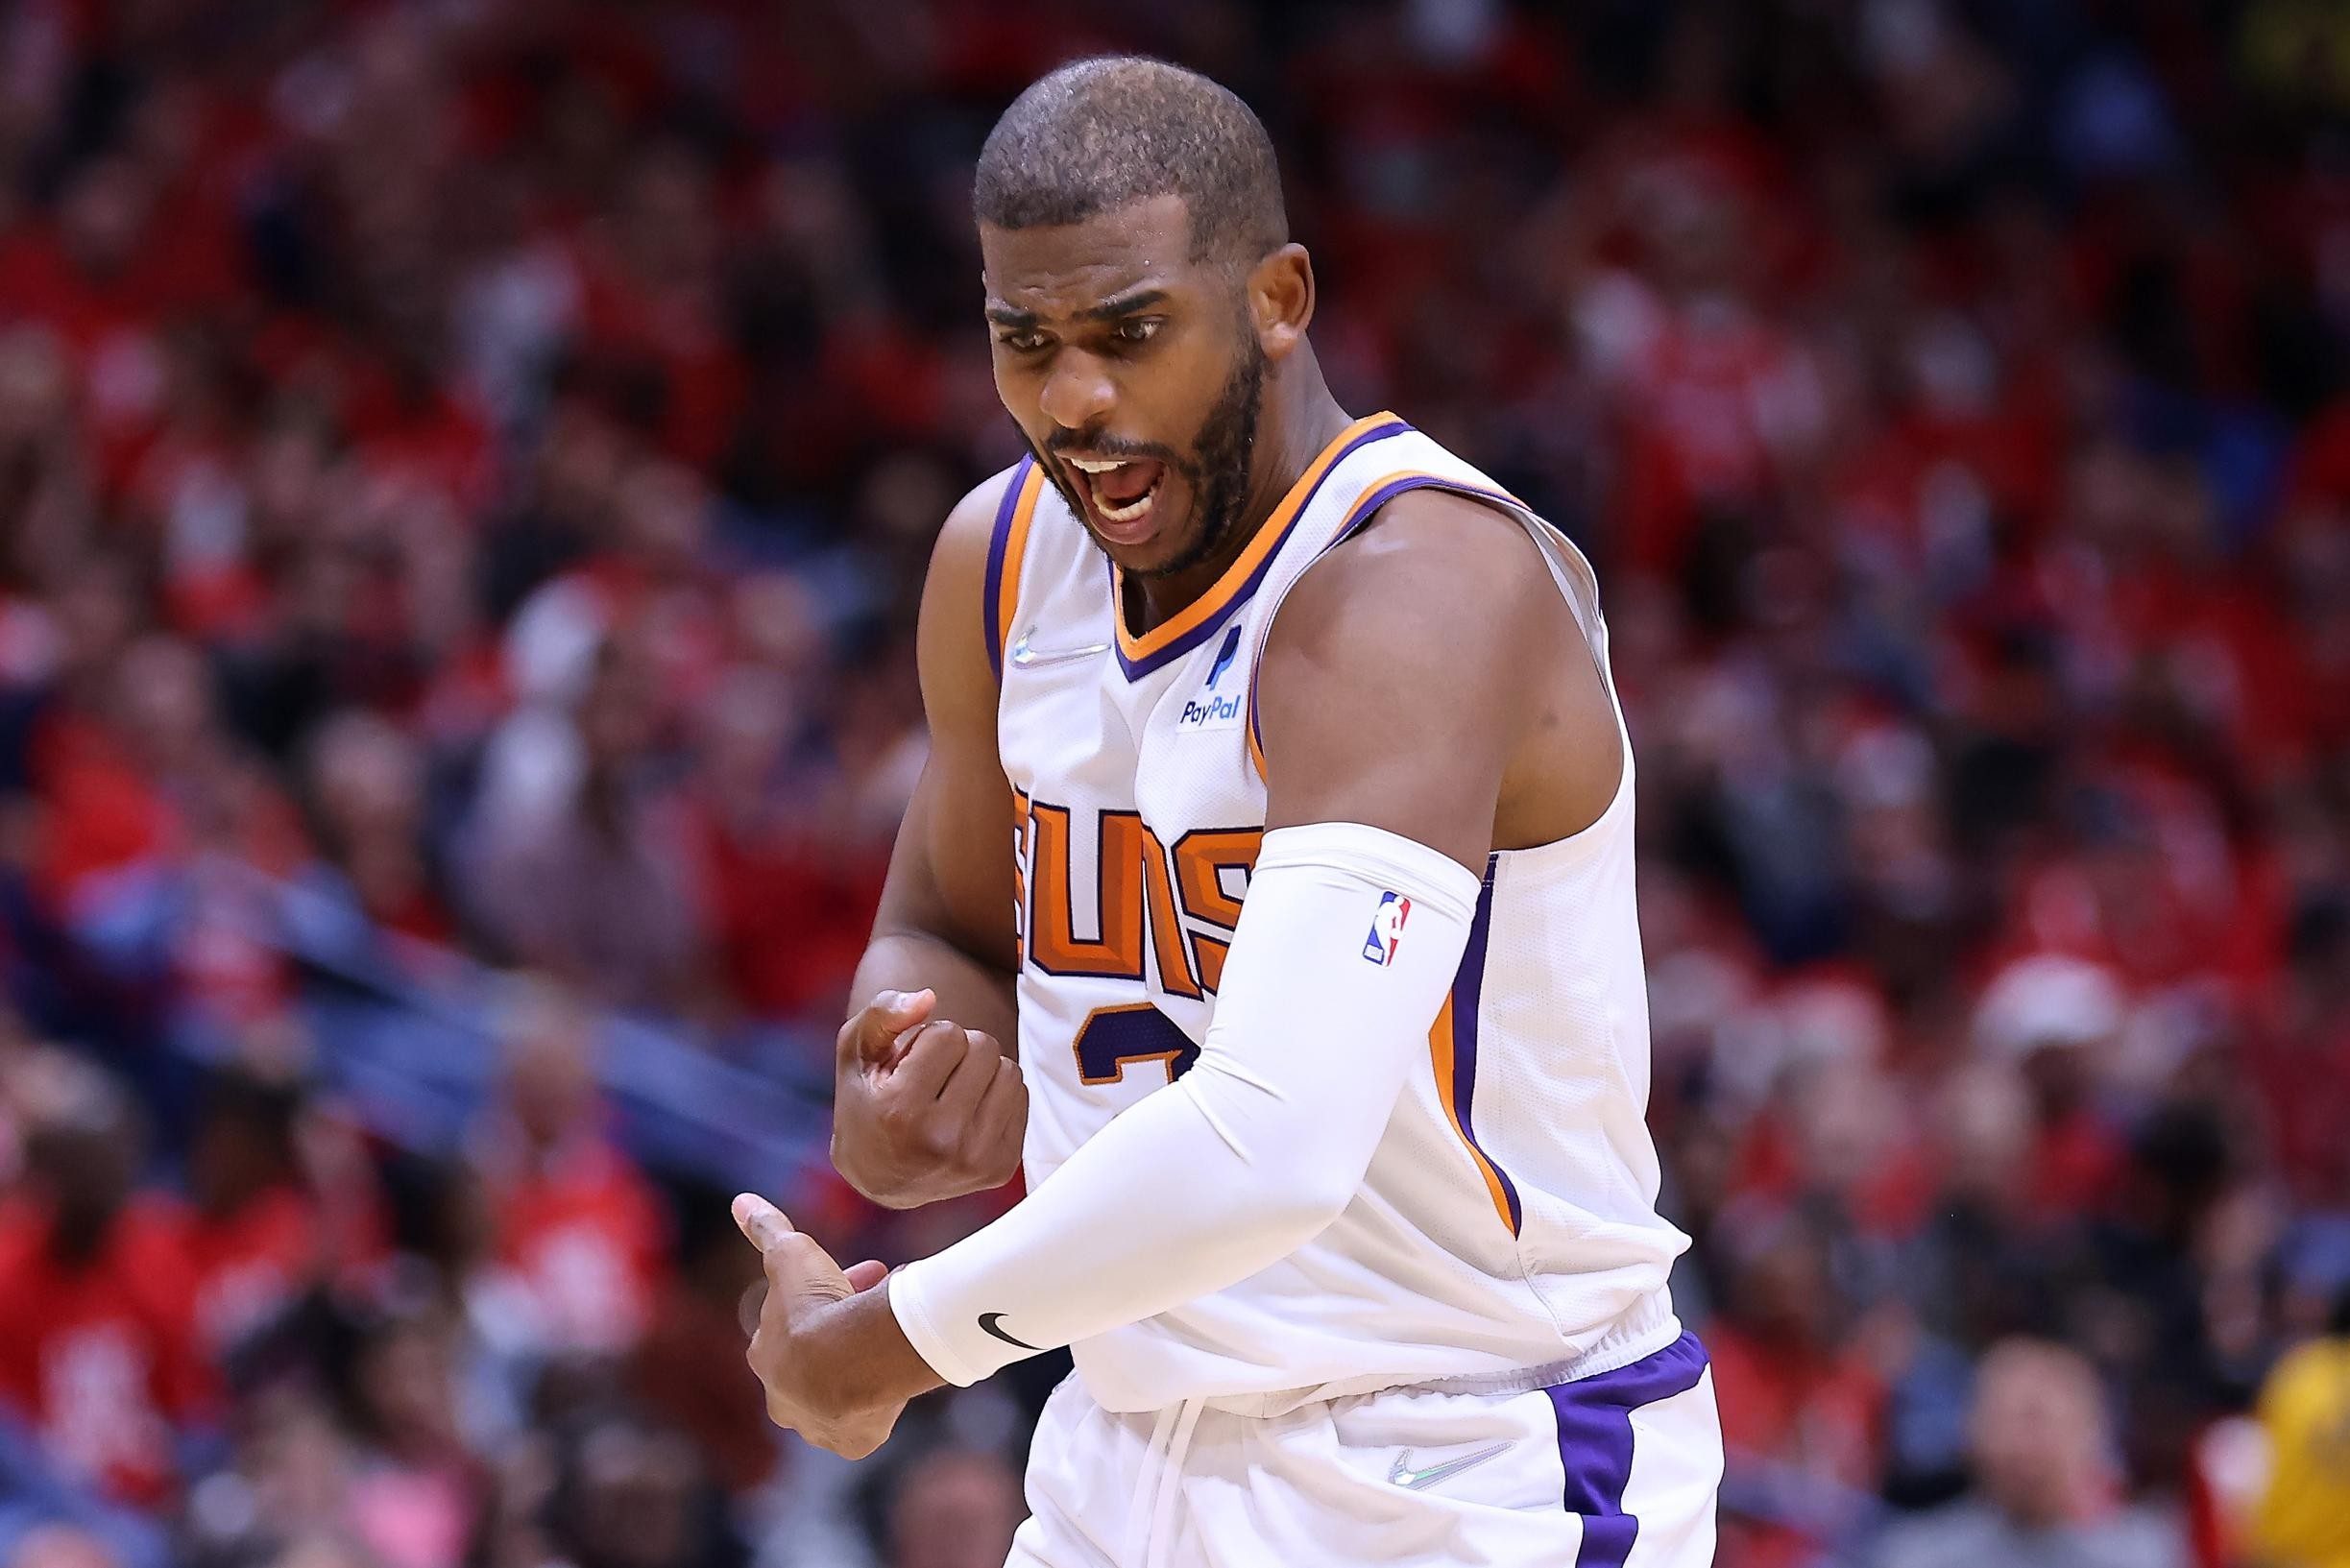 Finalisten van 2021 leiden opnieuw in eerste ronde NBA-play-offs, ijzersterke Chris Paul blinkt uit bij Phoenix Suns